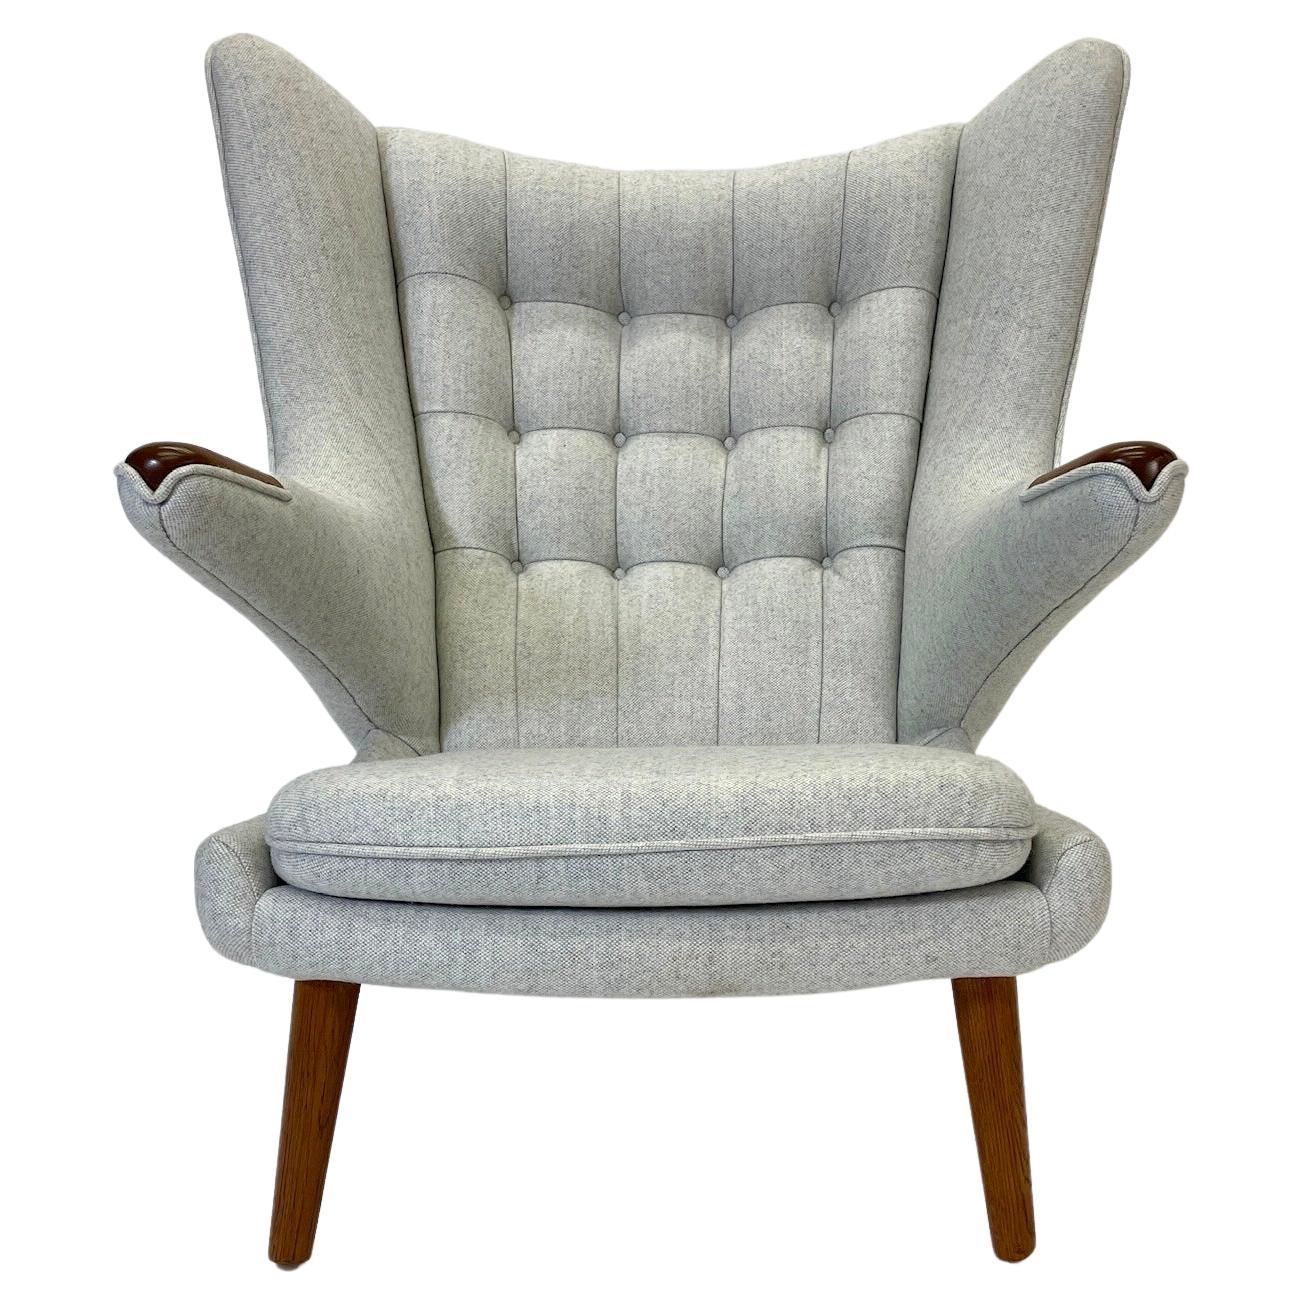 Der Papa-Bär-Stuhl  ist eine absolut atemberaubende  AP-29. Ein wahrhaft ikonischer Stuhl, neu gepolstert mit der schönsten grauen Maharam-Wolle. Der Stuhl hat schöne Eichenbeine und Teakholzfüße.

Diese Stühle aus der Zeit der Jahrhundertmitte sind